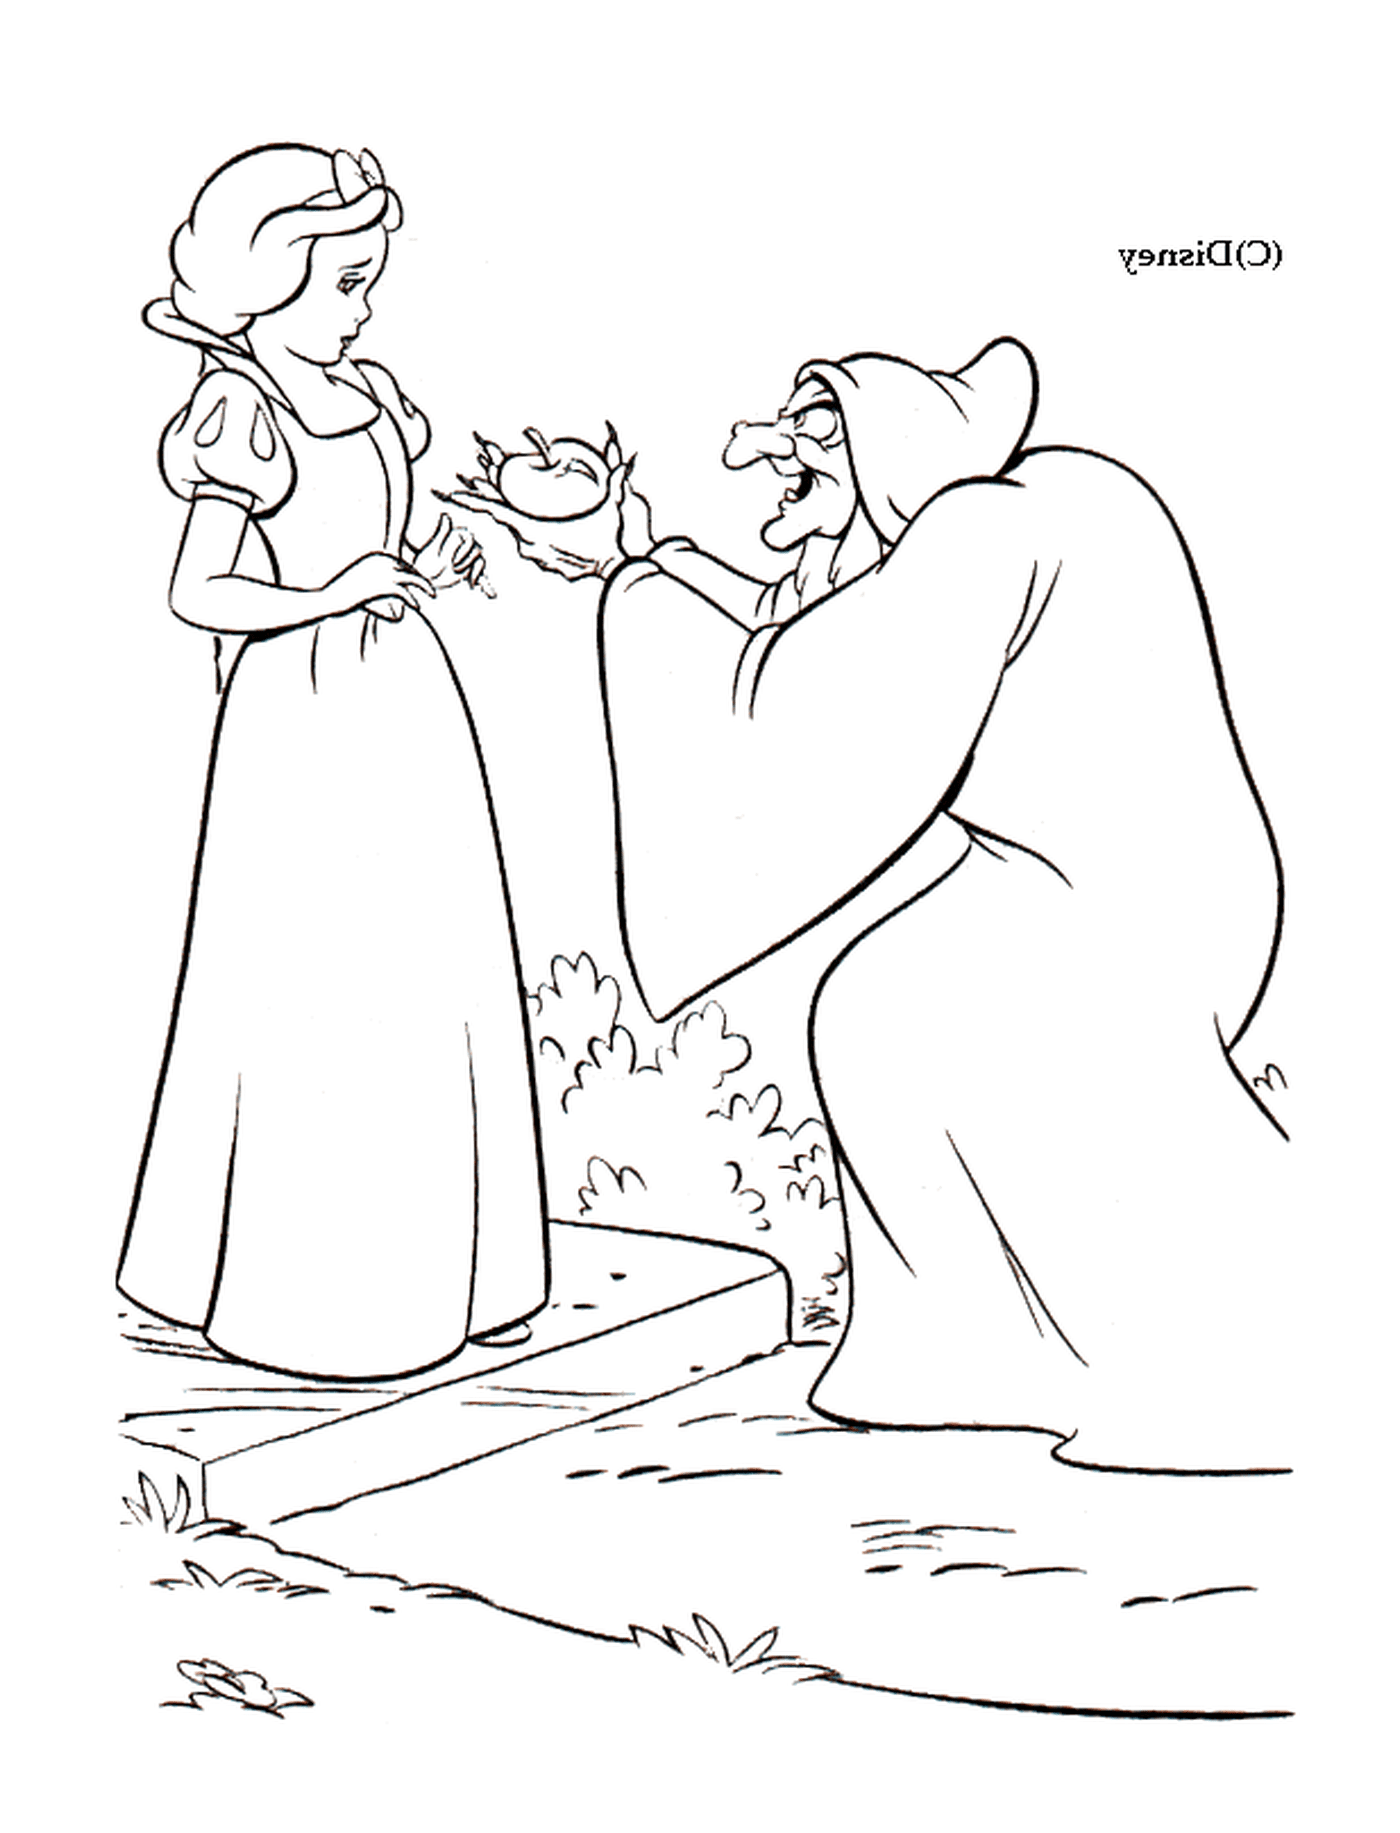  La strega dà la mela a Biancaneve 